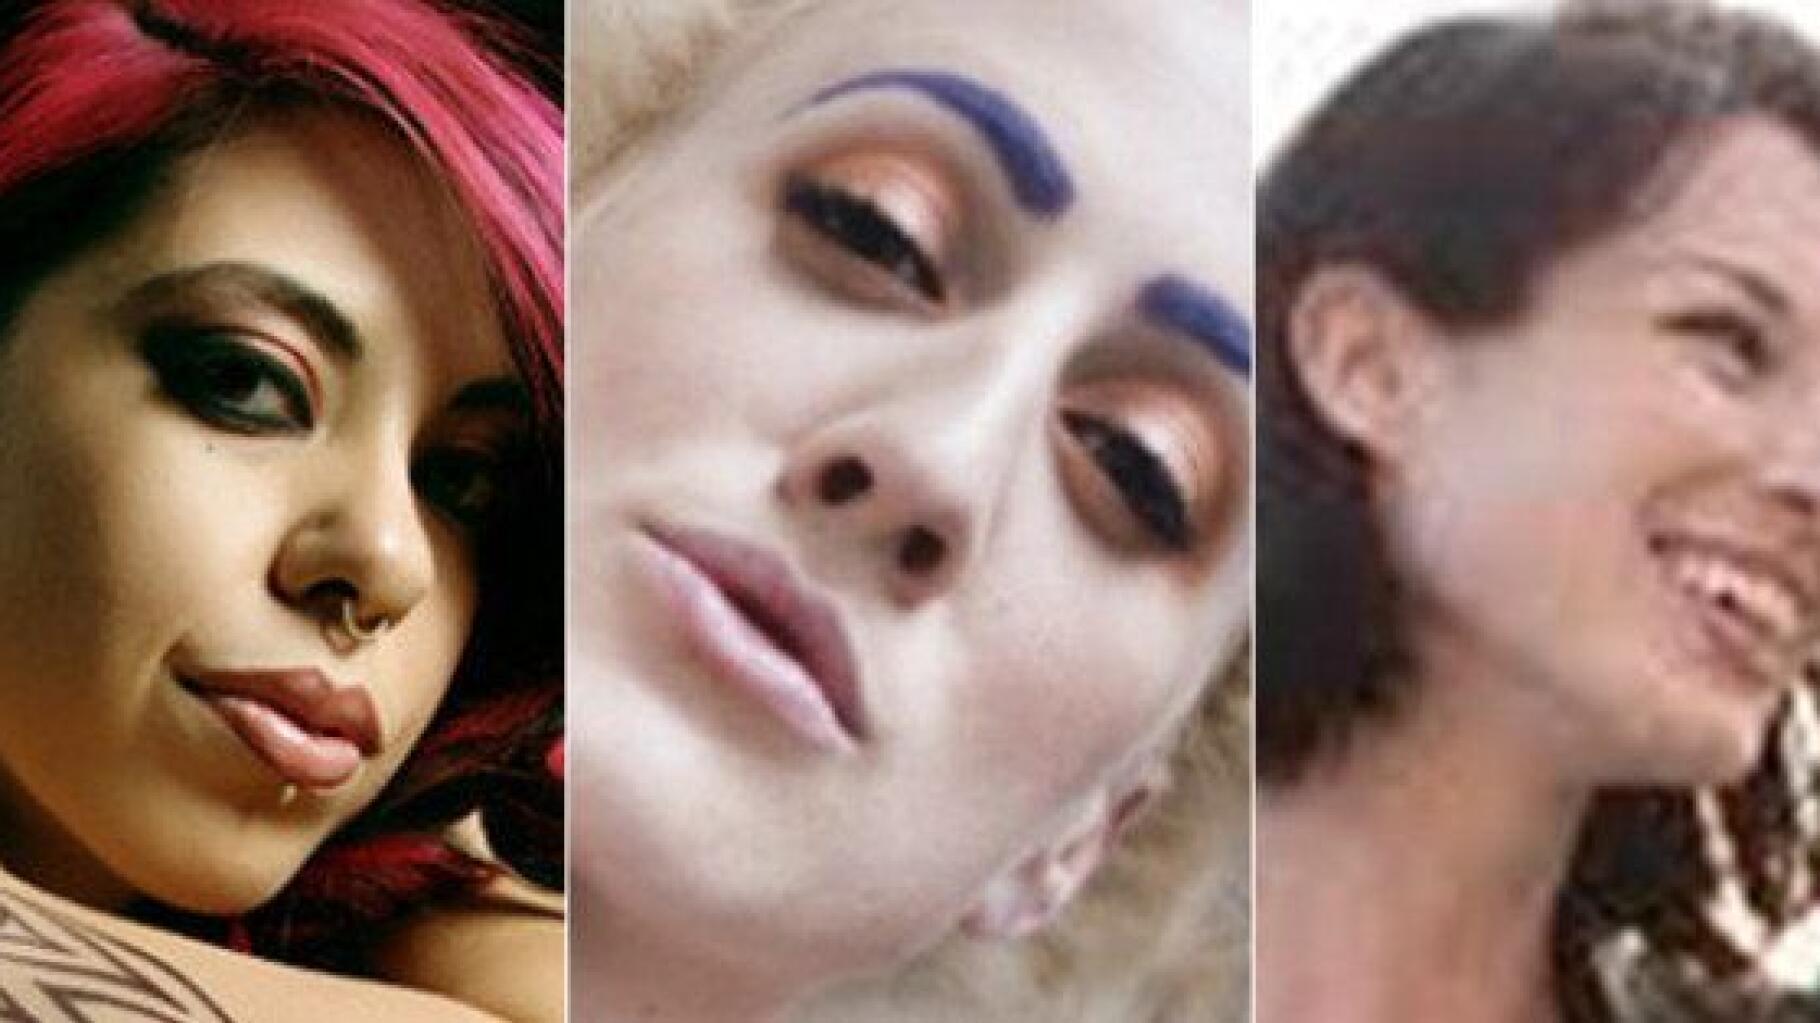 Trois actrices porno expliquent pourquoi elles ont choisi ce métier